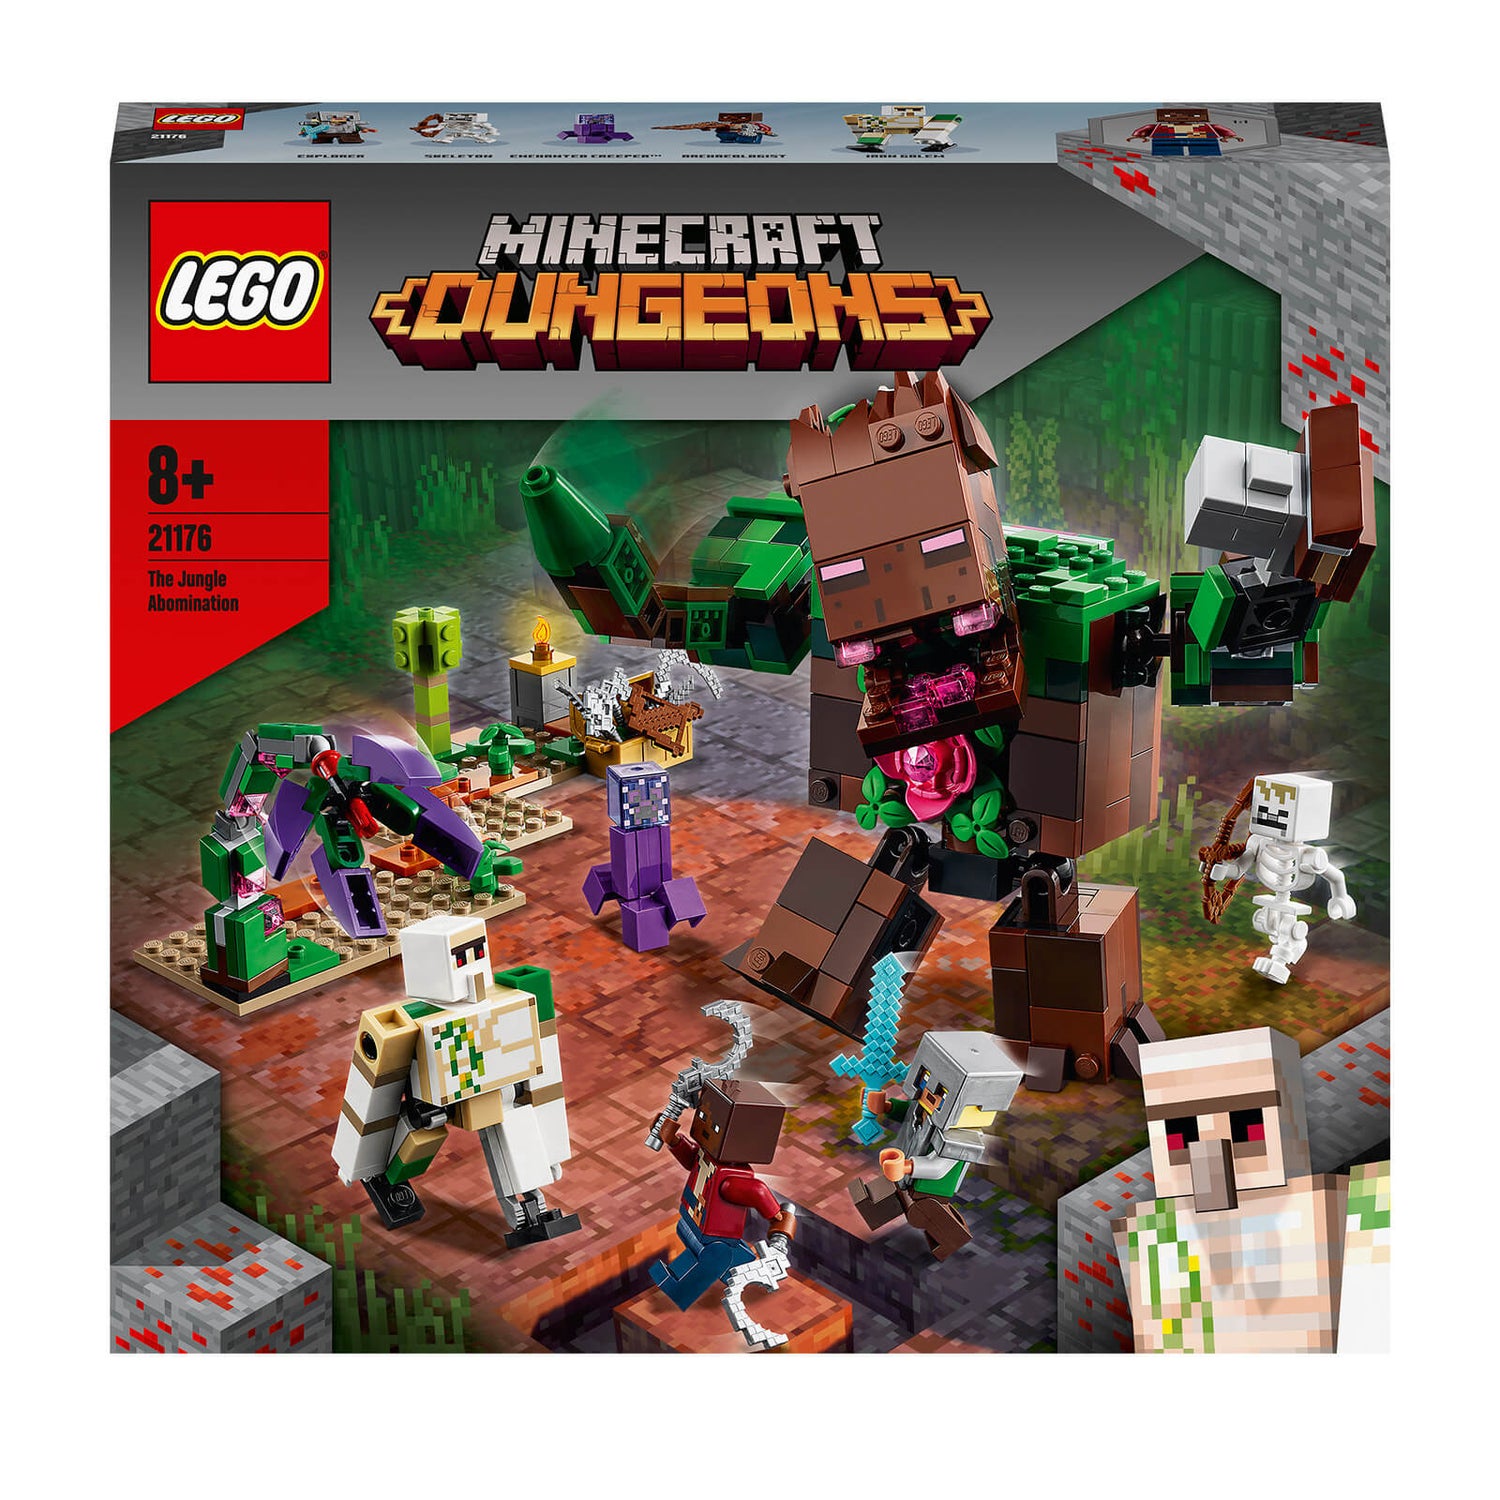 LEGO Minecraft Der Dschungel Abscheulichkeit Set (21176)